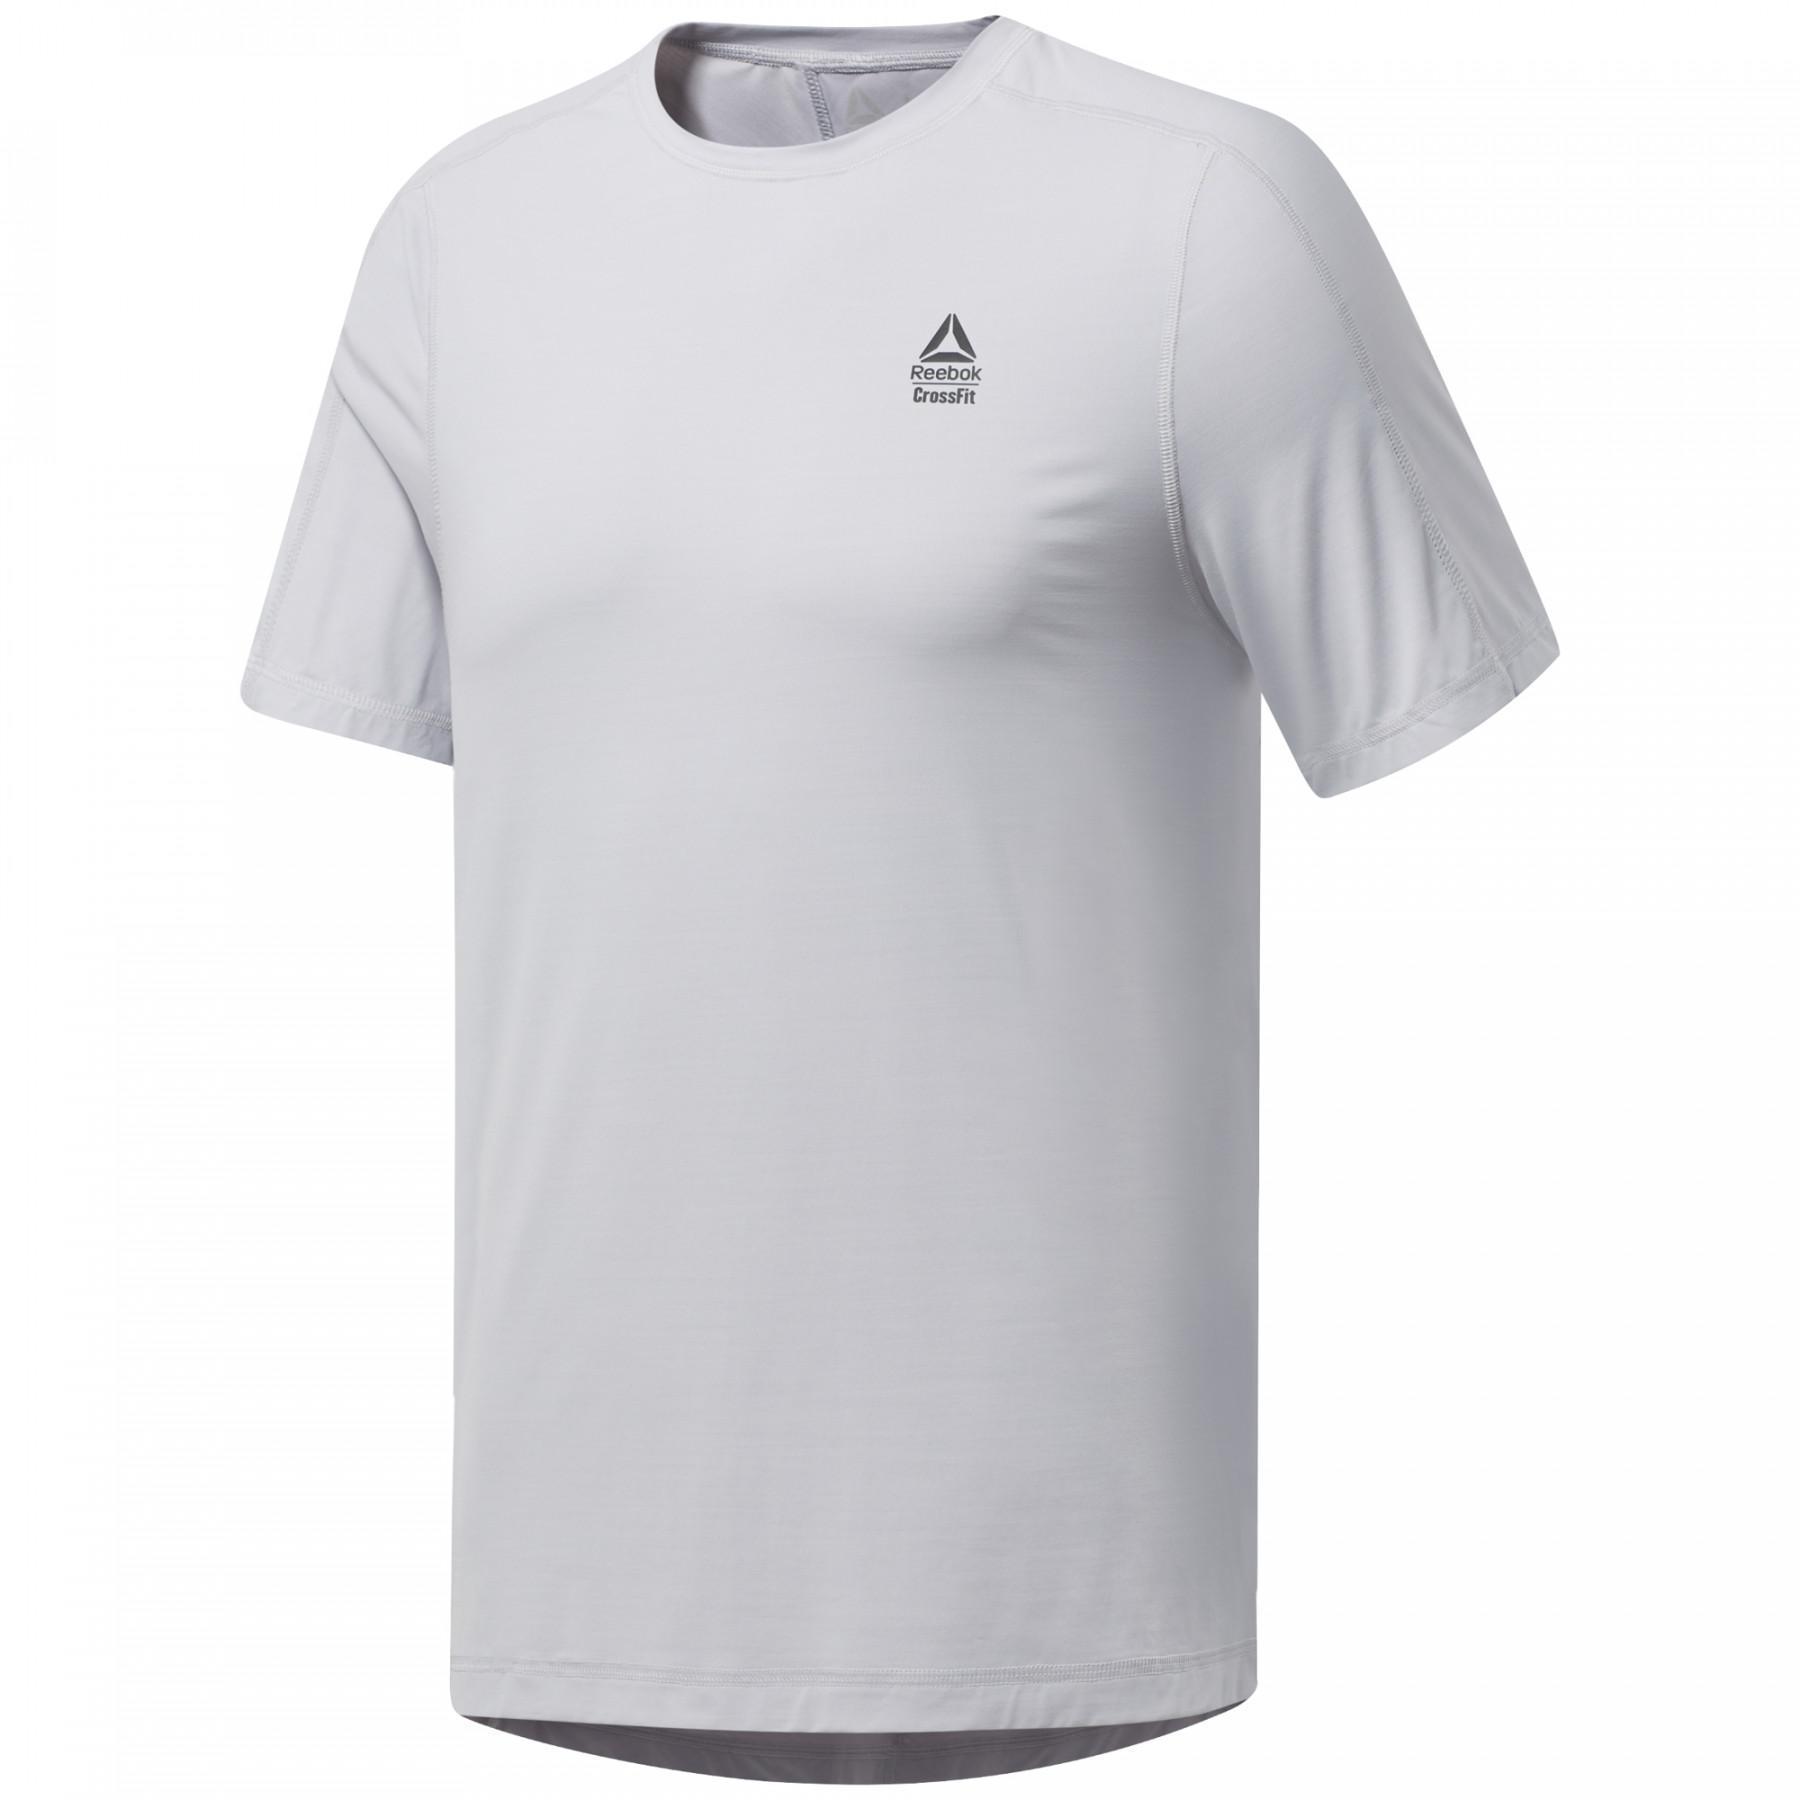 Koszulka Reebok CrossFit® ActivChill